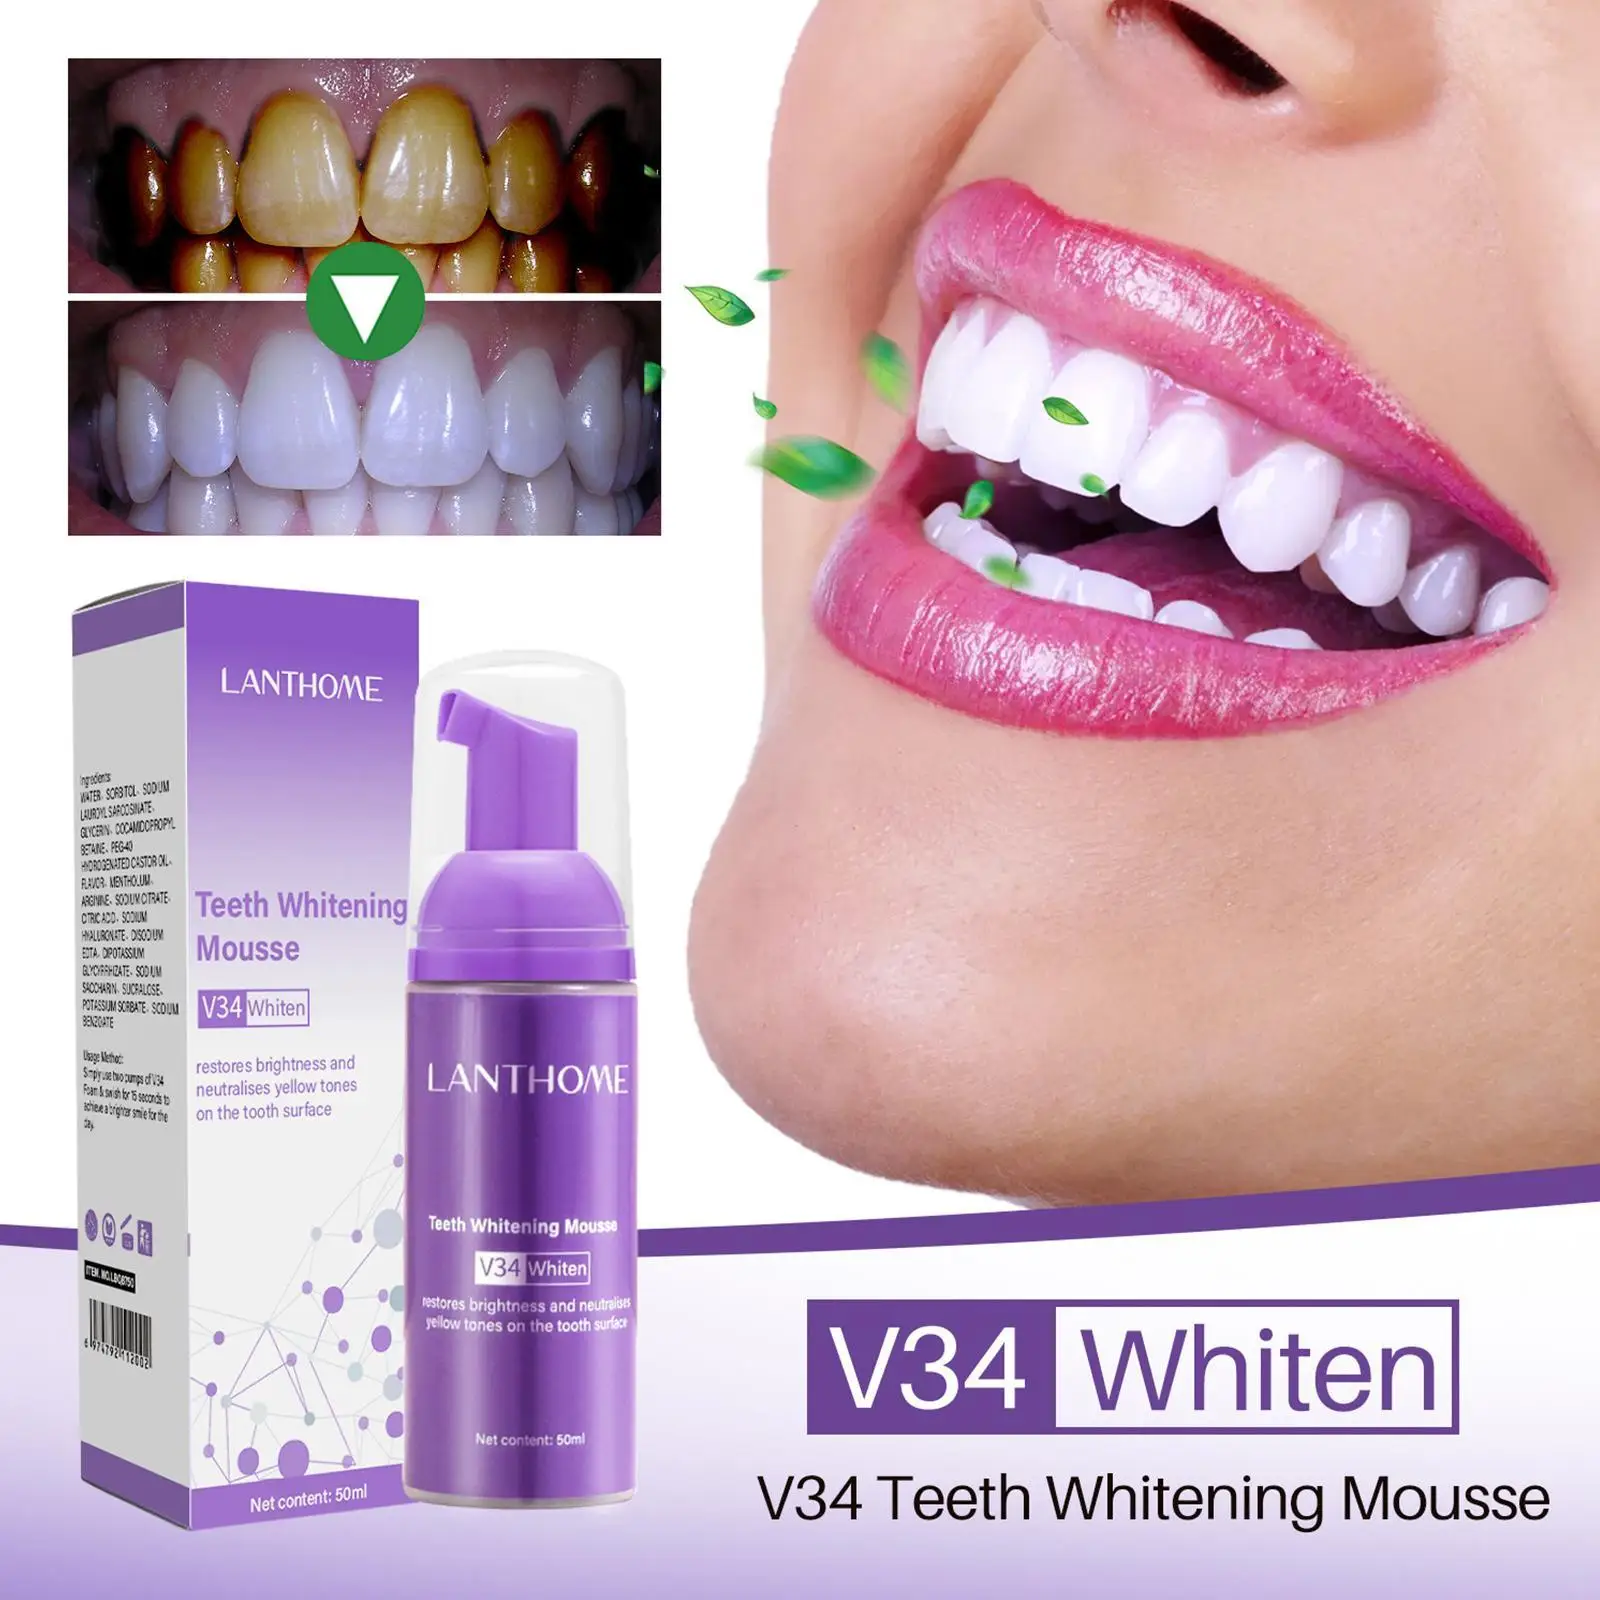 

Мусс для отбеливания зубов V34, пена для устранения пятен, свежего дыхания, отбеливания зубов, гигиены полости рта, зубная паста